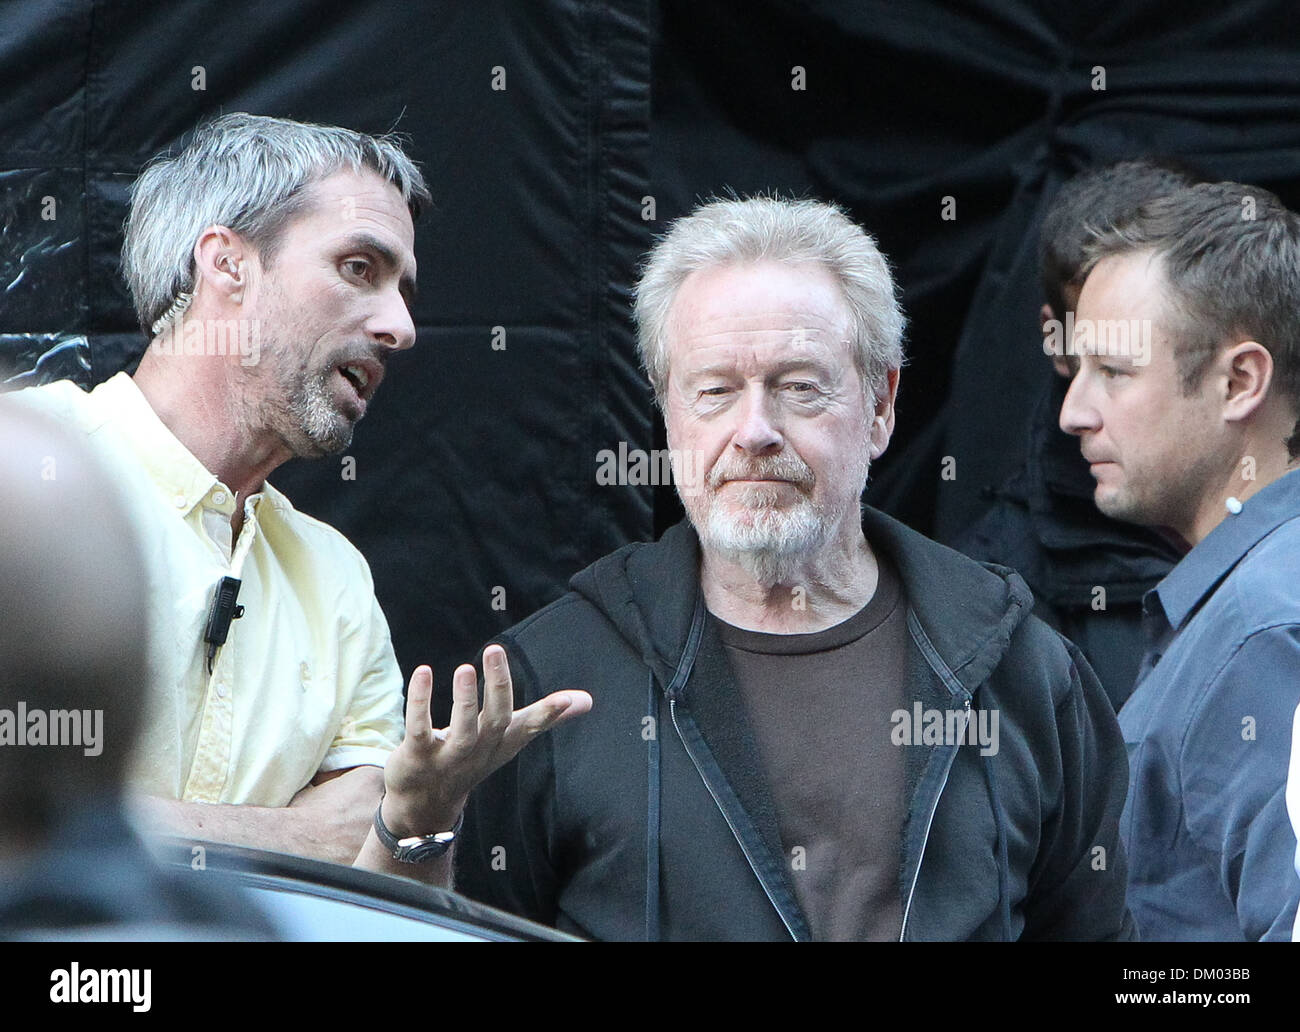 Regista Ridley Scott sul set del nuovo film "Il consigliere". Londra, Inghilterra - 08.09.12 Foto Stock